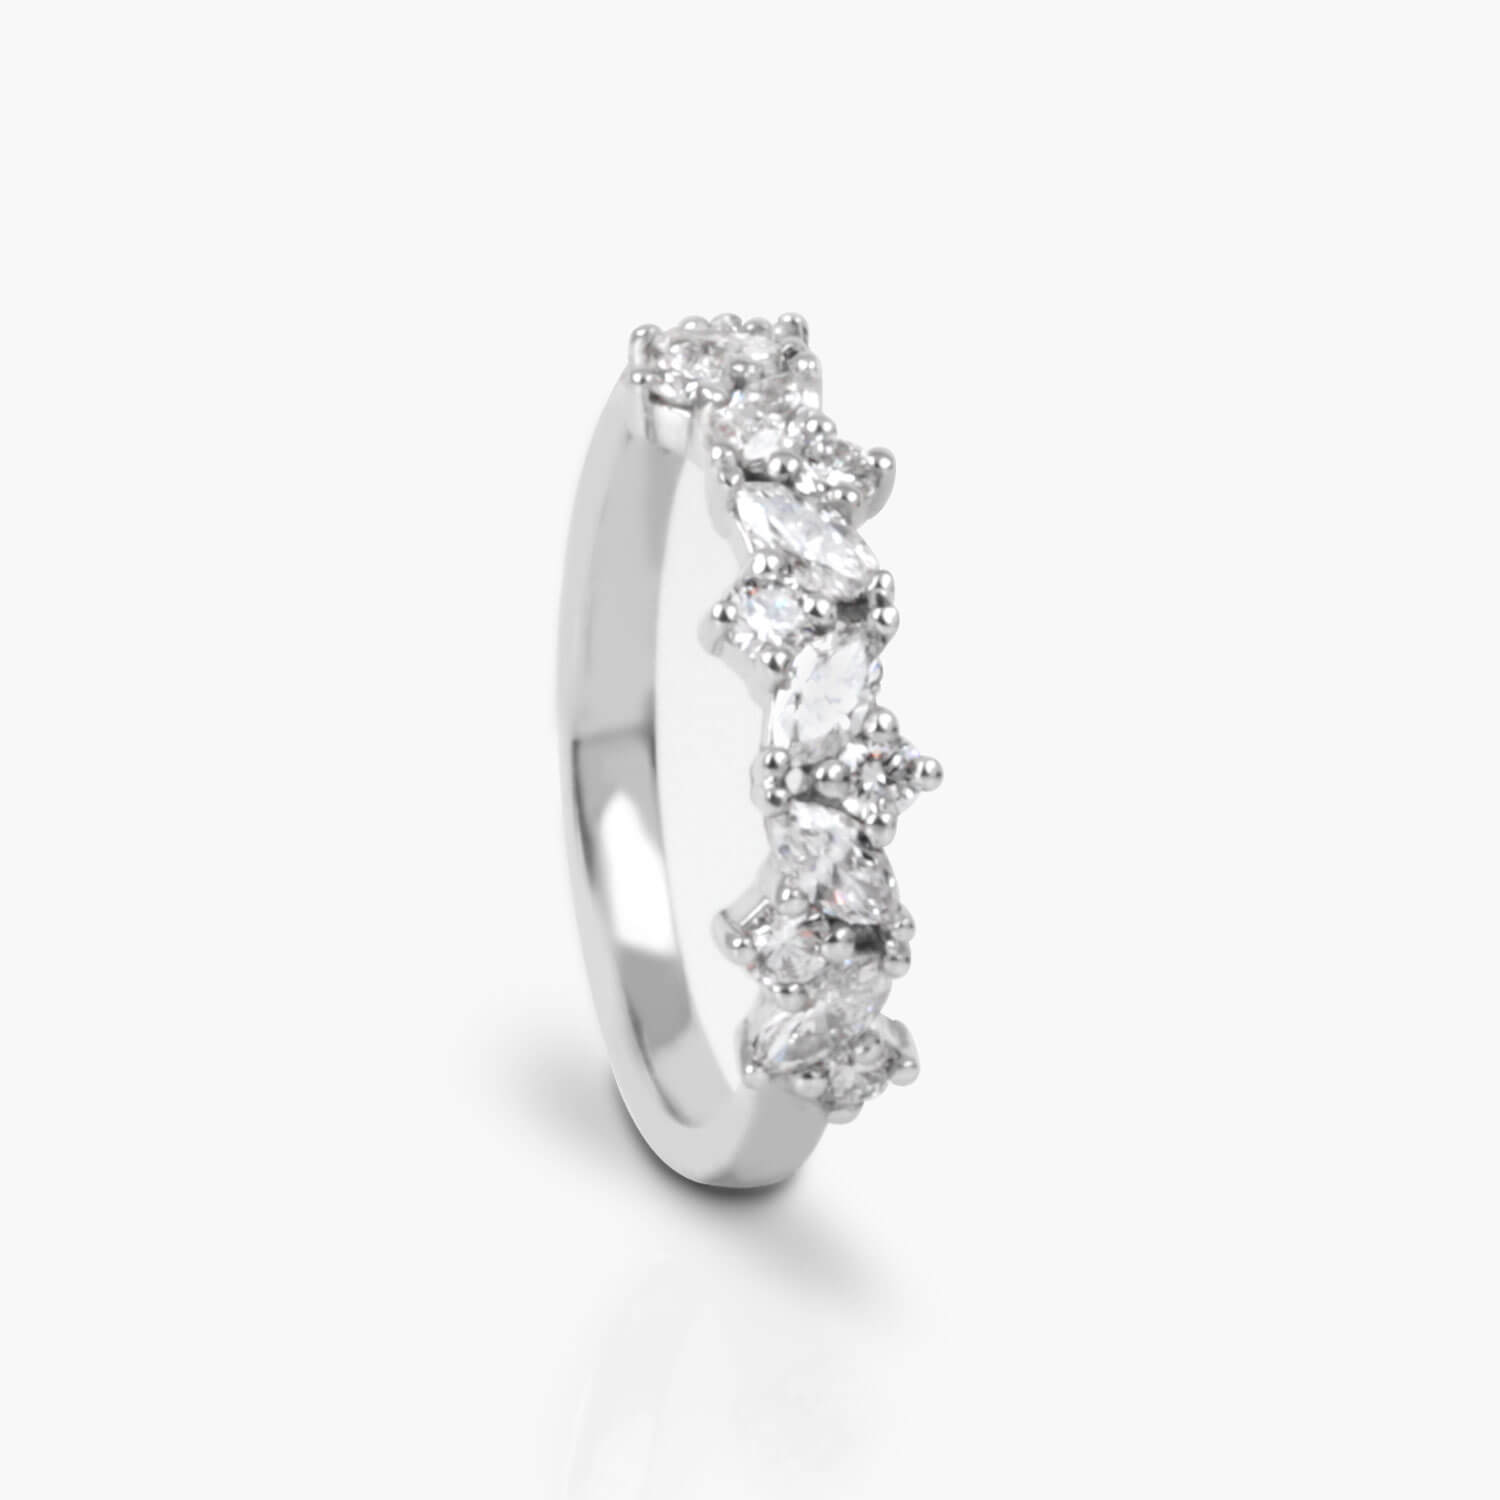 Bespoke Flower Inspired Wedding Ring